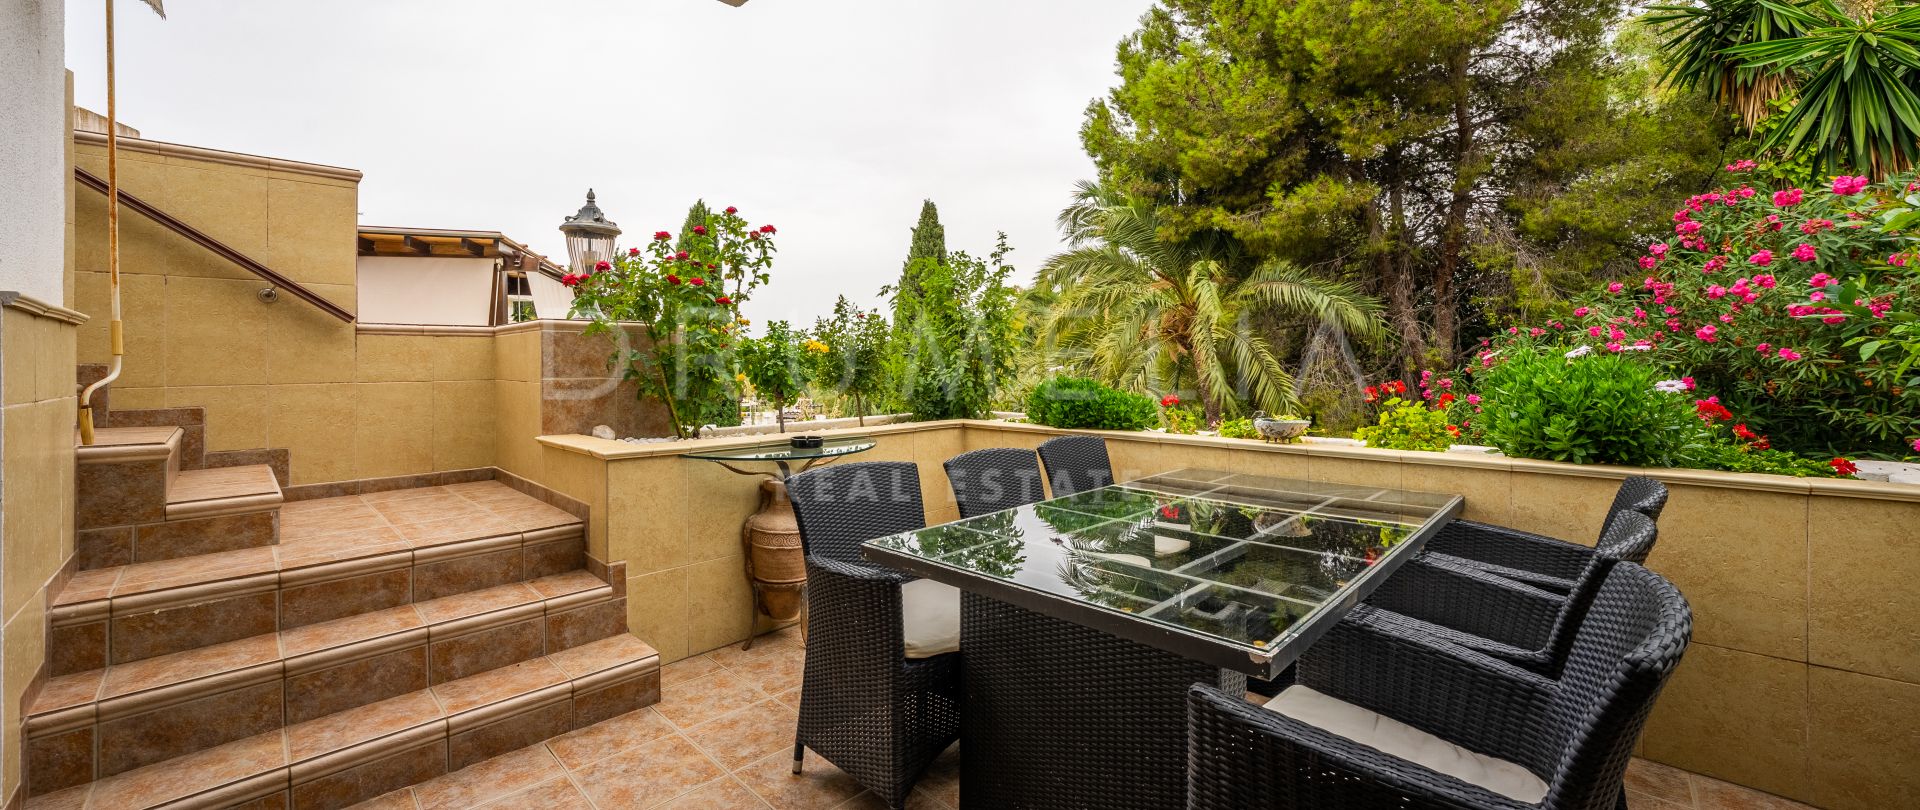 Apartamento de estilo clásico con gran terraza en Kings Hills, en la Milla de Oro de Marbella